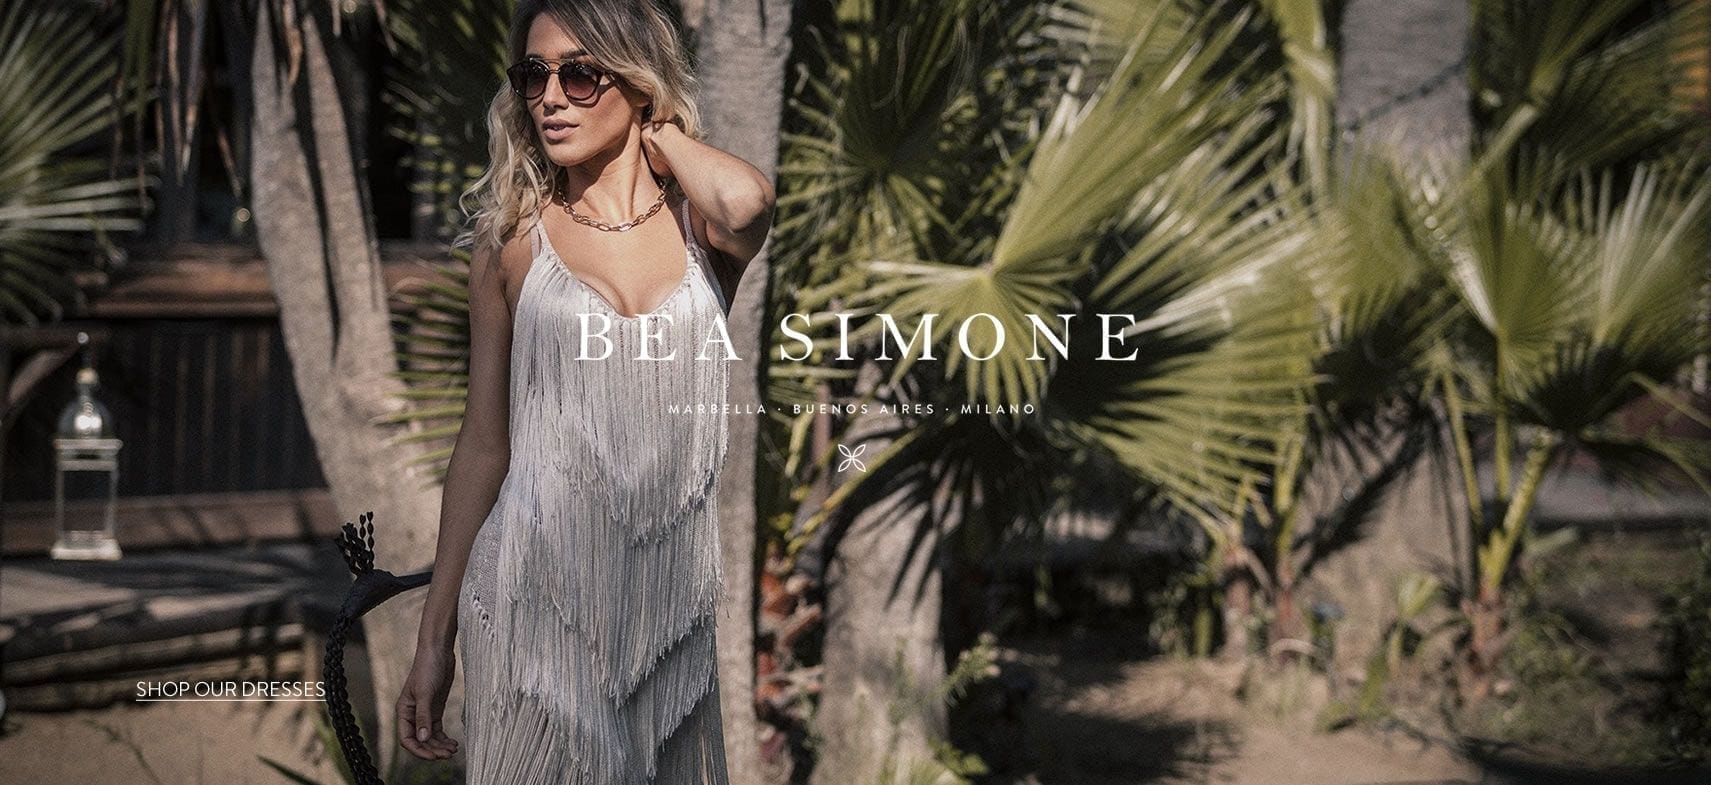 Bea Simone ofrece el glamour de los años 70 y la belleza artesanal desde Marbella